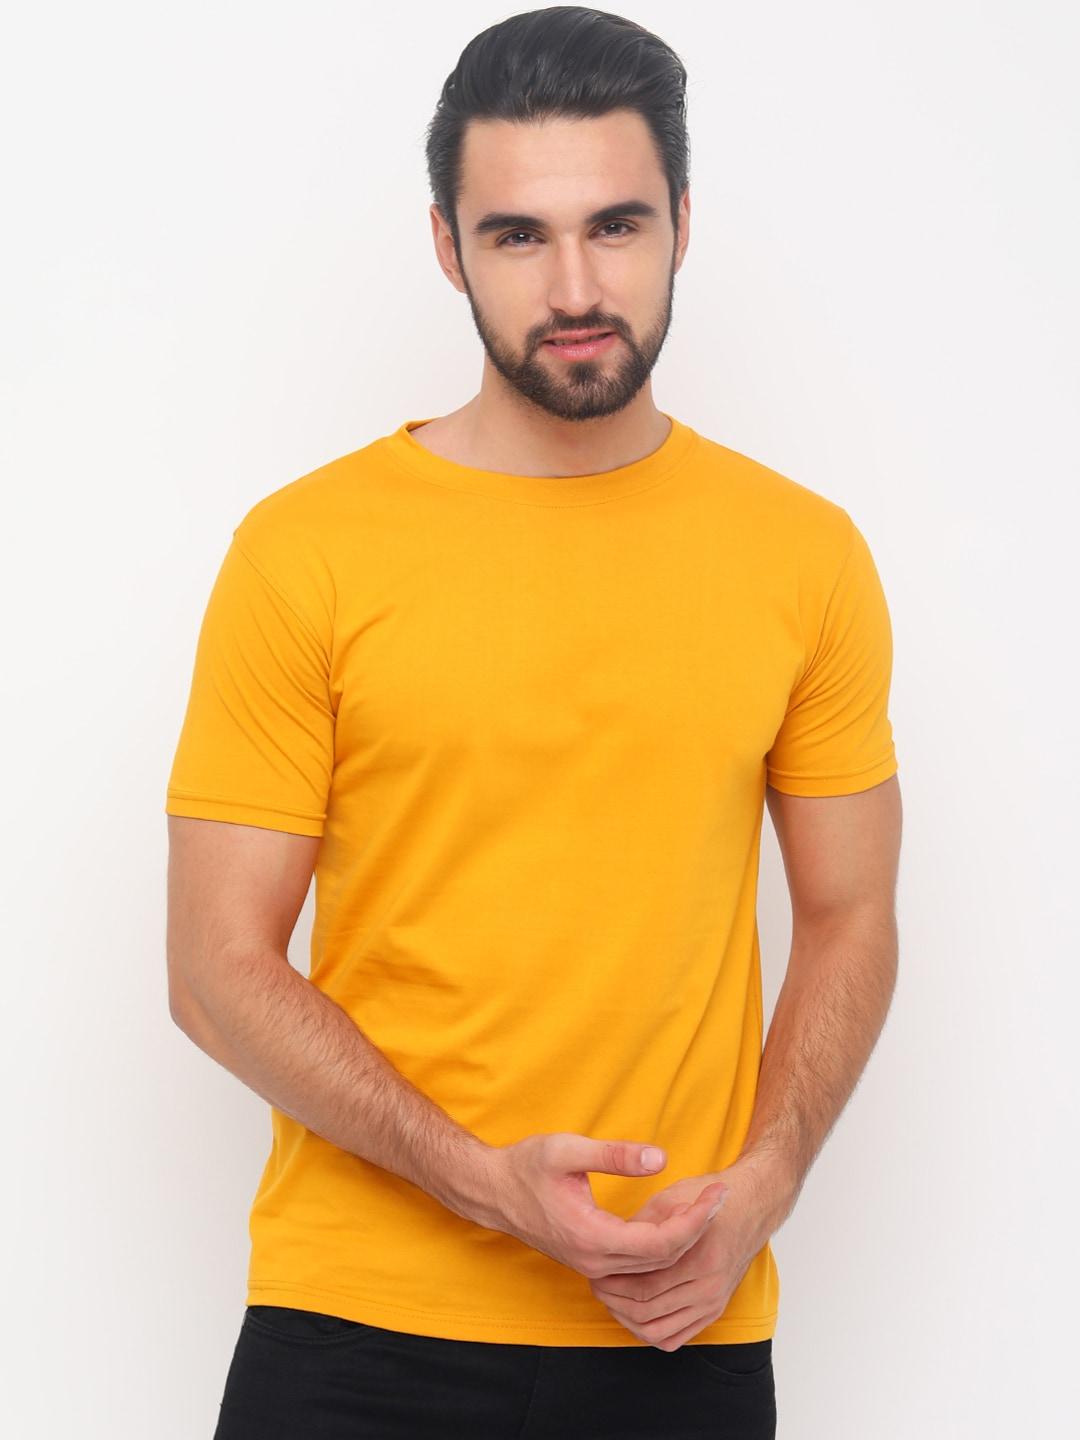 bushirt men mustard solid round neck pure cotton t-shirt